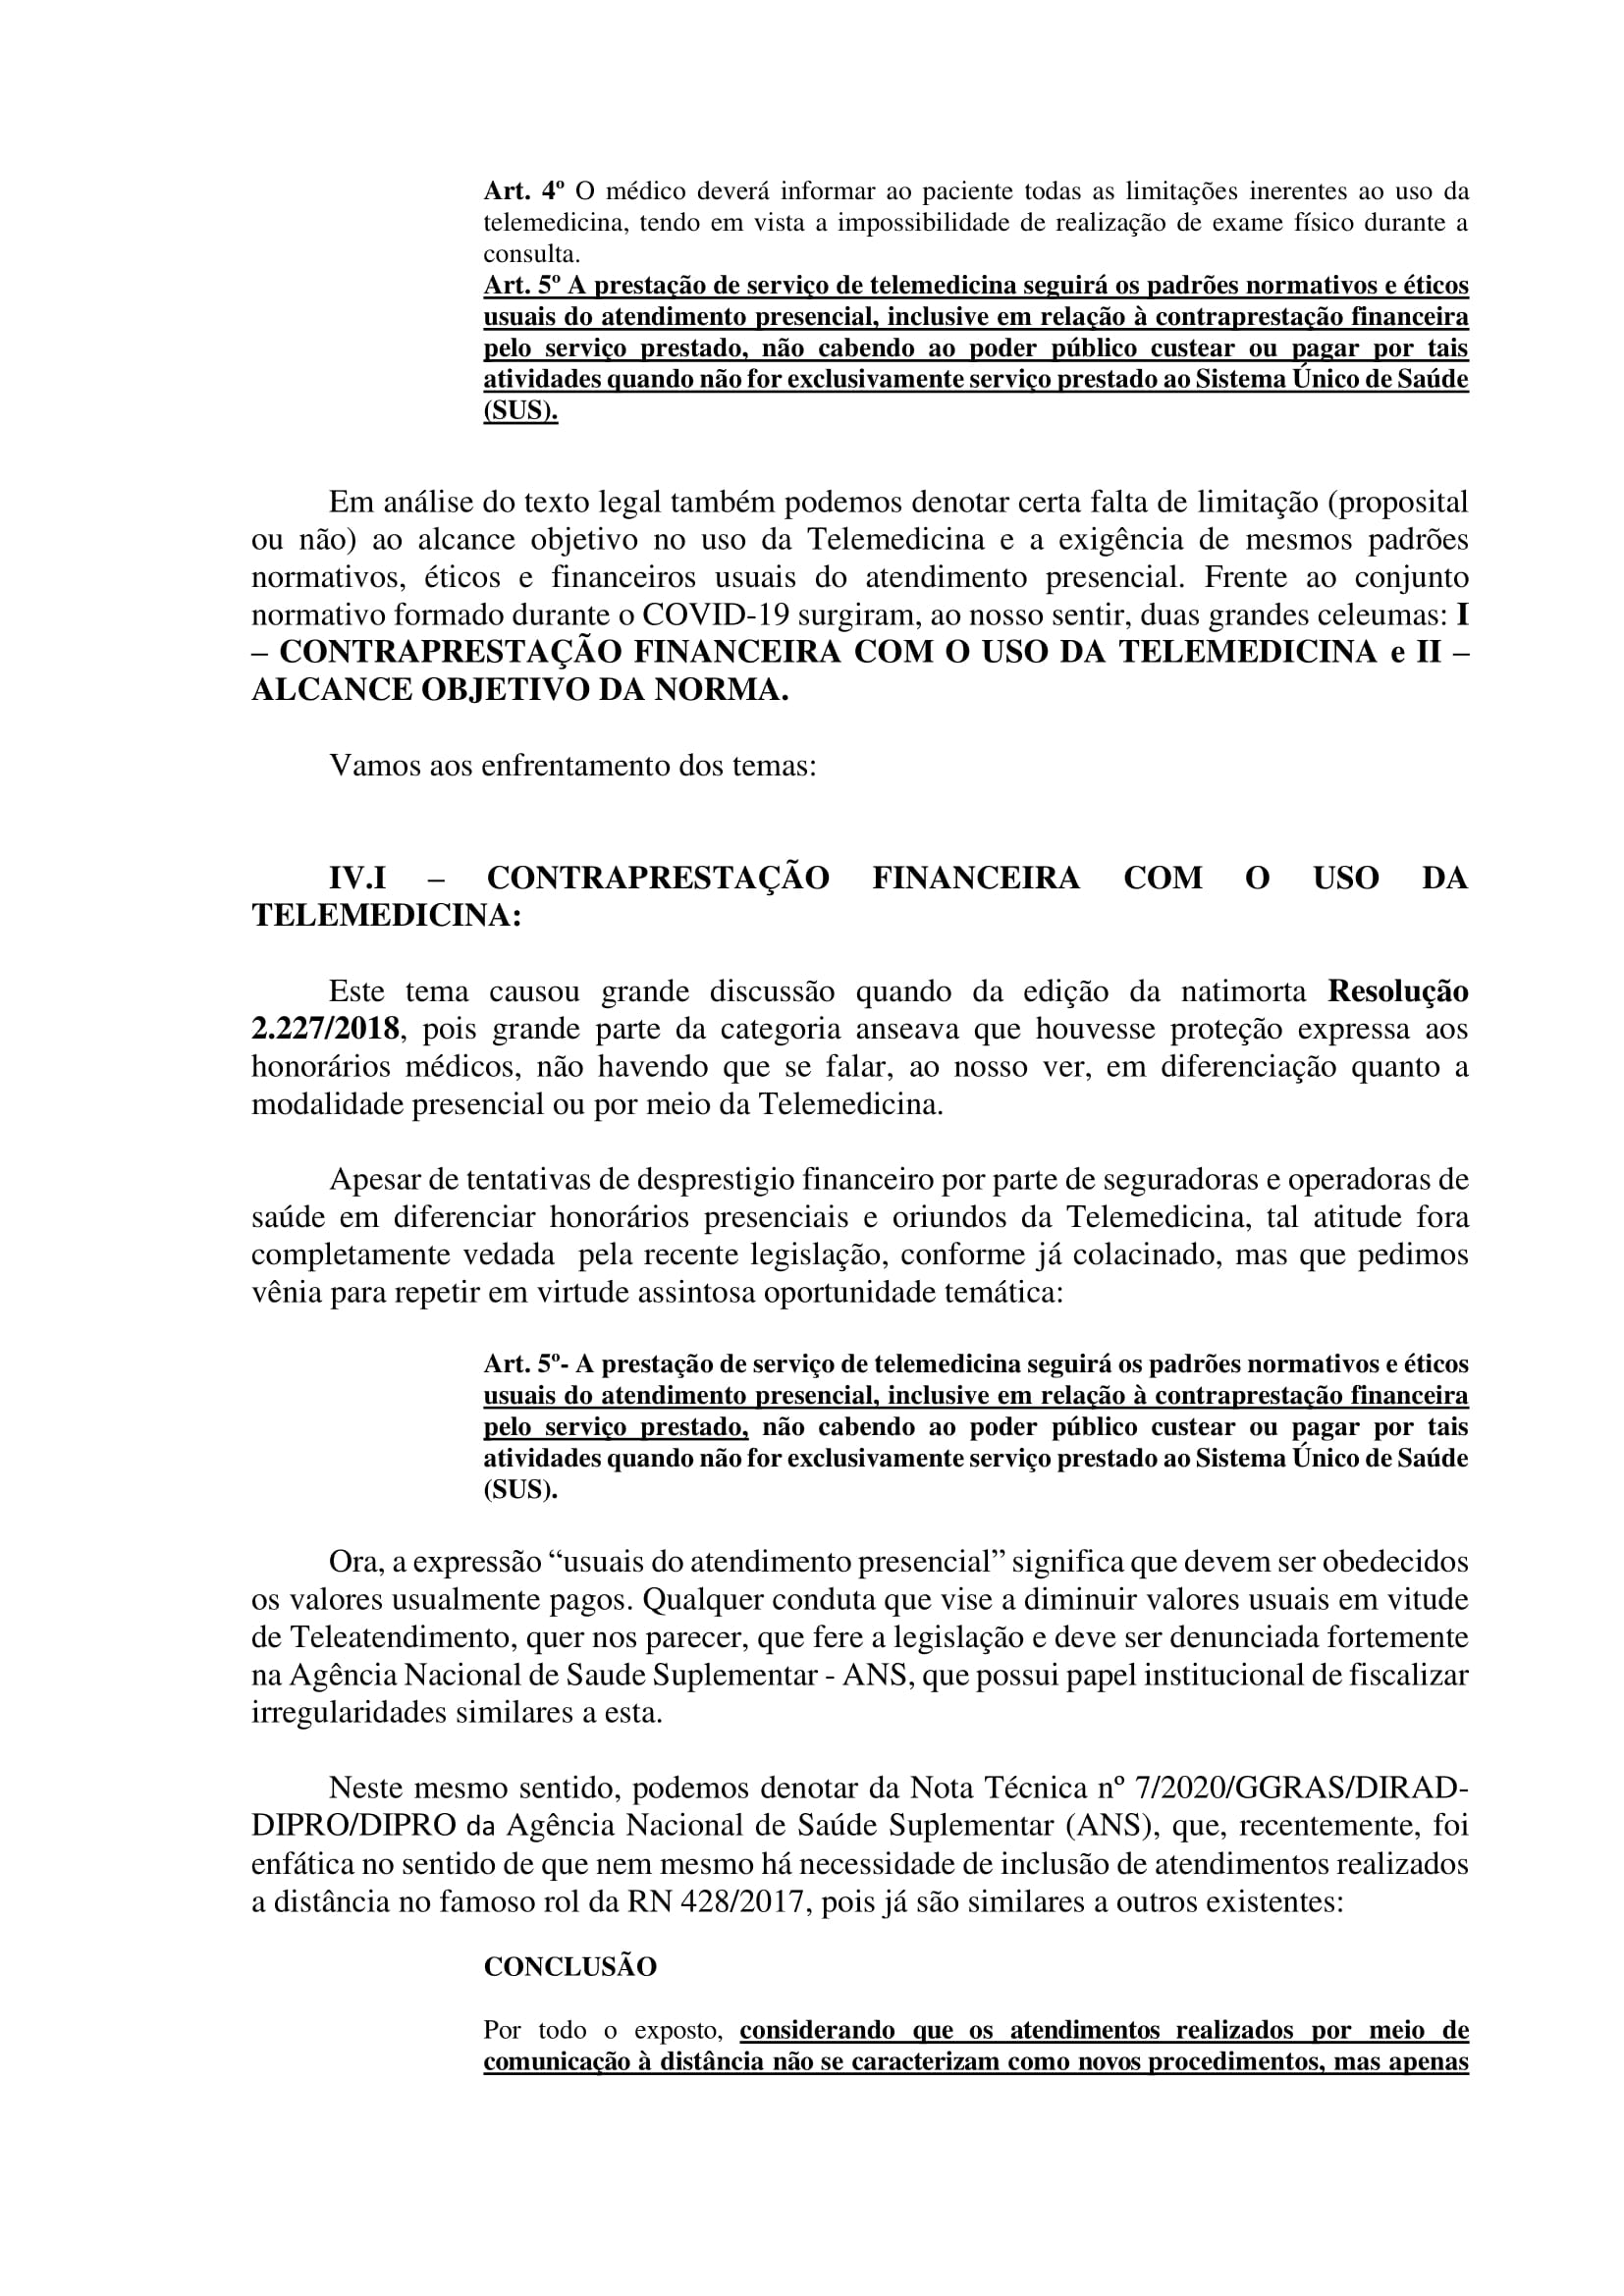 Artigo sobre Telemedicina e suas implicações regulatórias - Tiago Torres-10